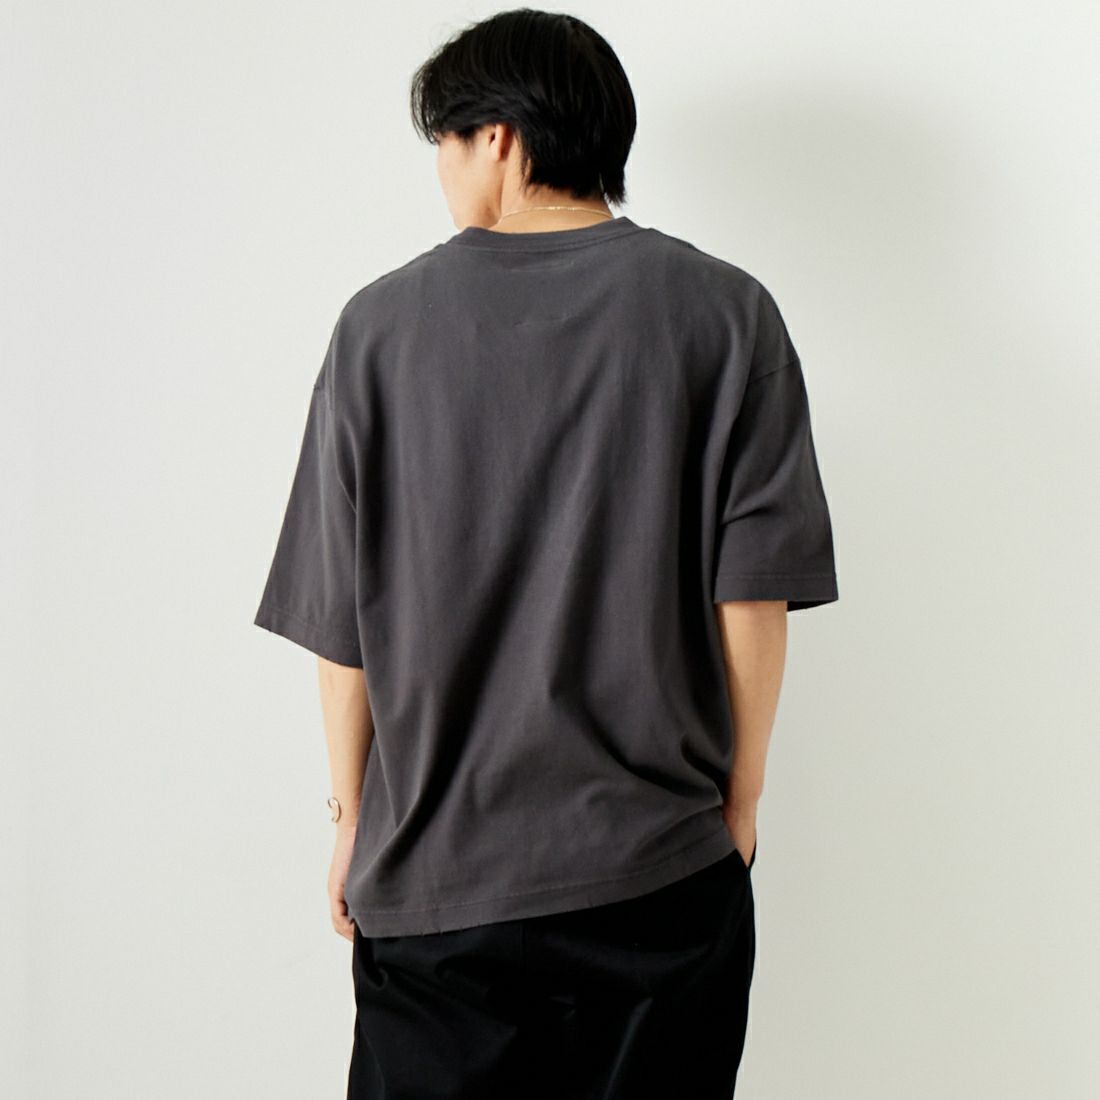 Maison MIHARA YASUHIRO [メゾン ミハラヤスヒロ] ディストレストAcid プリントTシャツ [J12TS552] BLACK &&モデル身長：179cm 着用サイズ：46&&